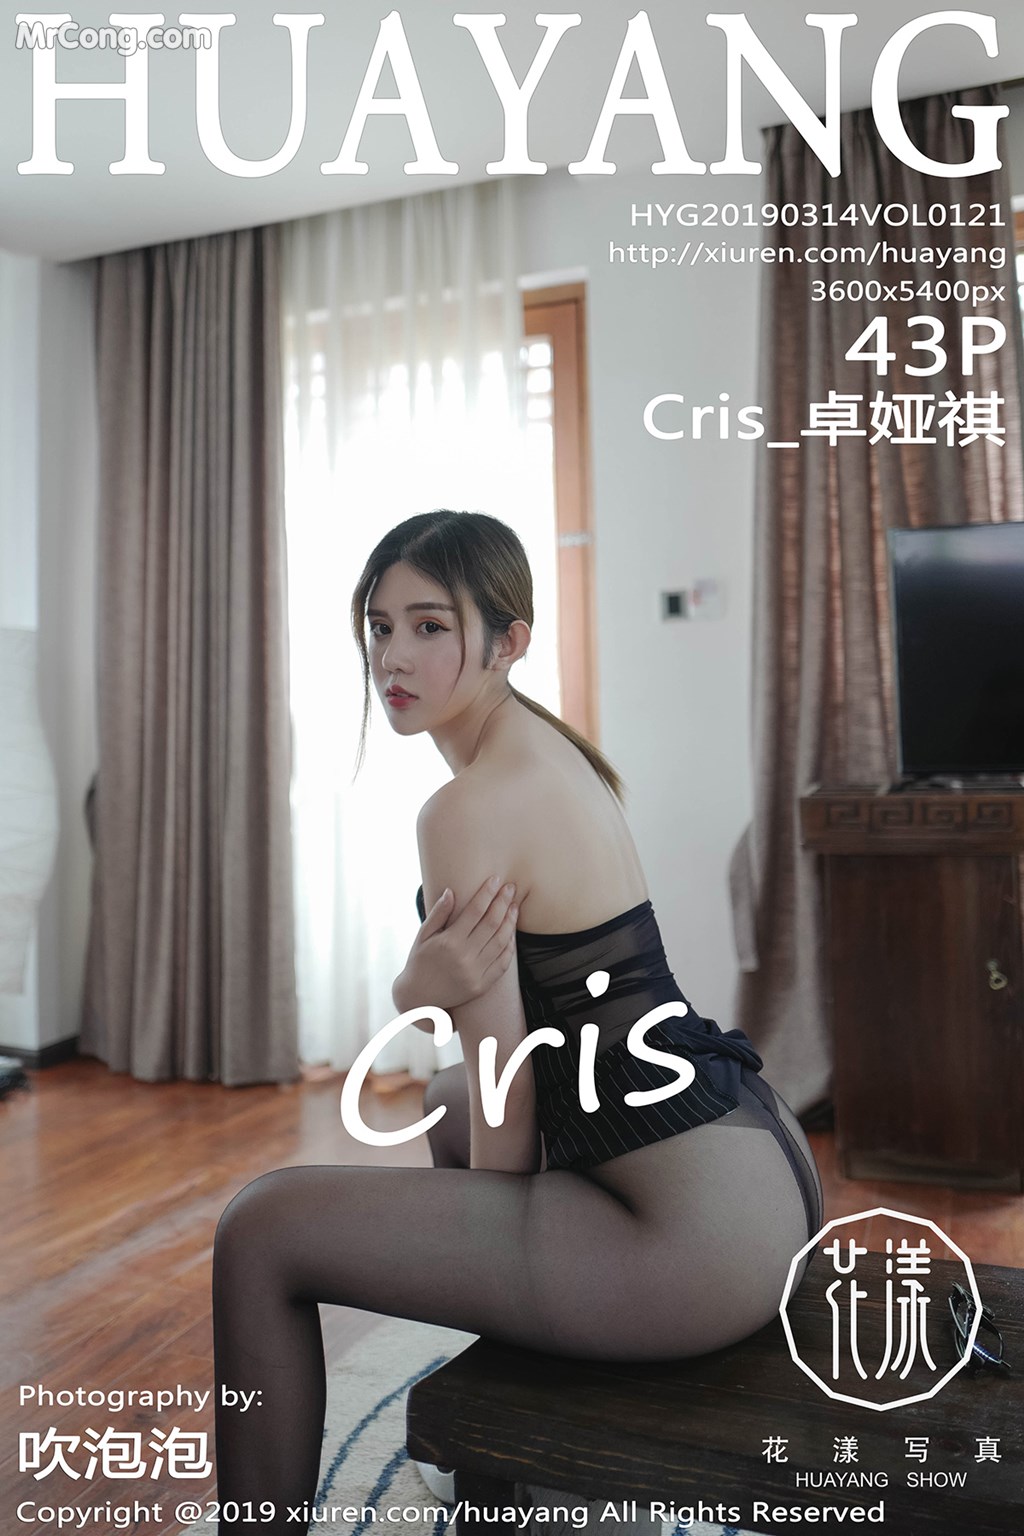 HuaYang 2019-03-14 Vol.121: Model Cris_ 卓娅祺 (44 photos)